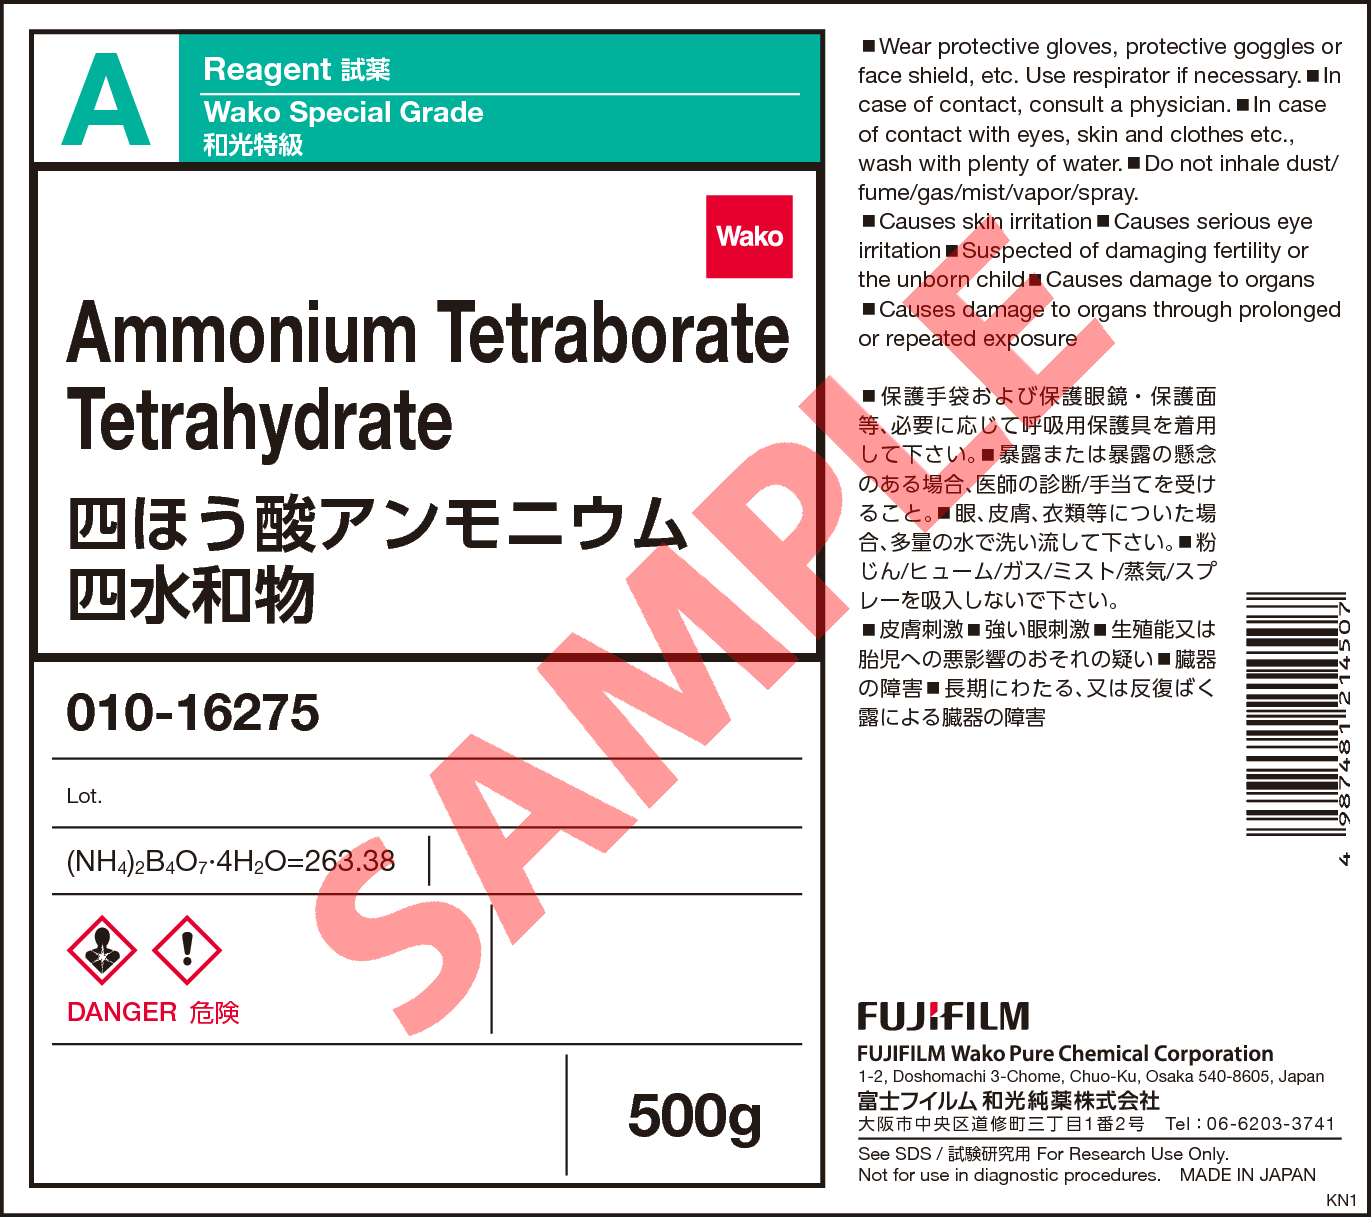 87 4 四ほう酸アンモニウム四水和物 Ammonium Tetraborate Tetrahydrate 010 詳細情報 試薬 富士フイルム和光純薬